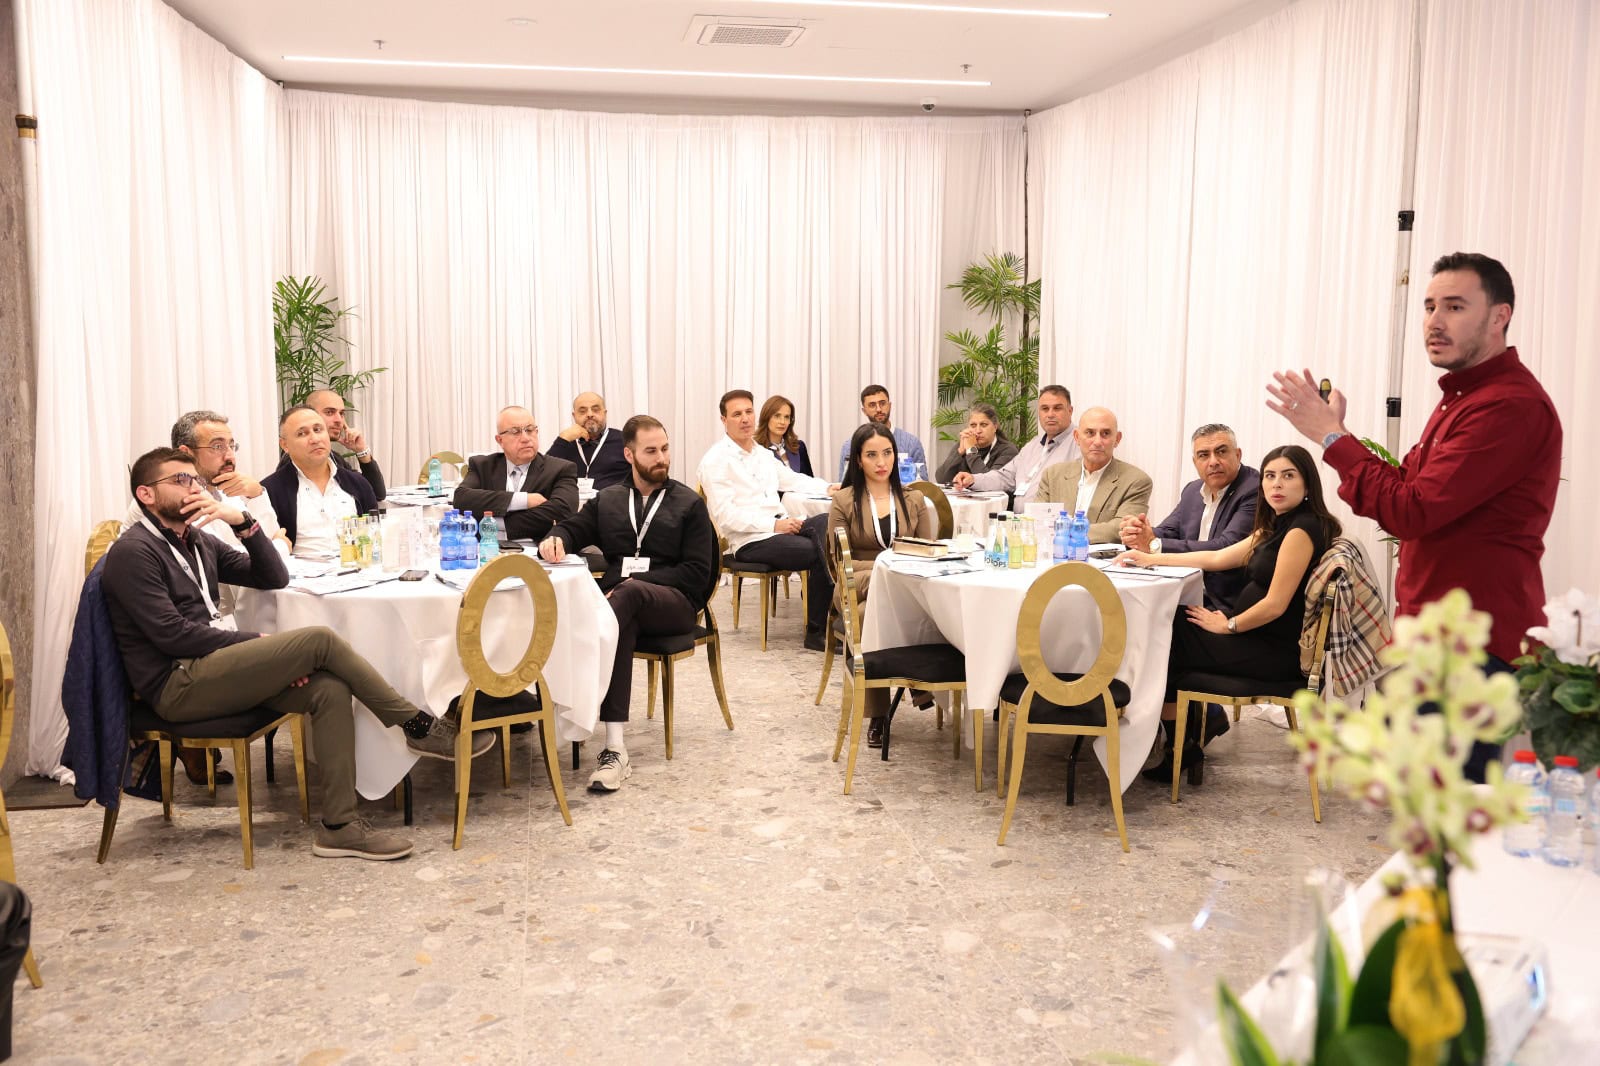 אירוע רשת קודרה, קהילת תורמים הפועלת לקידום חוסן ושייכות בחברה הערבית (צילום: עבד אלכרים סאלח)